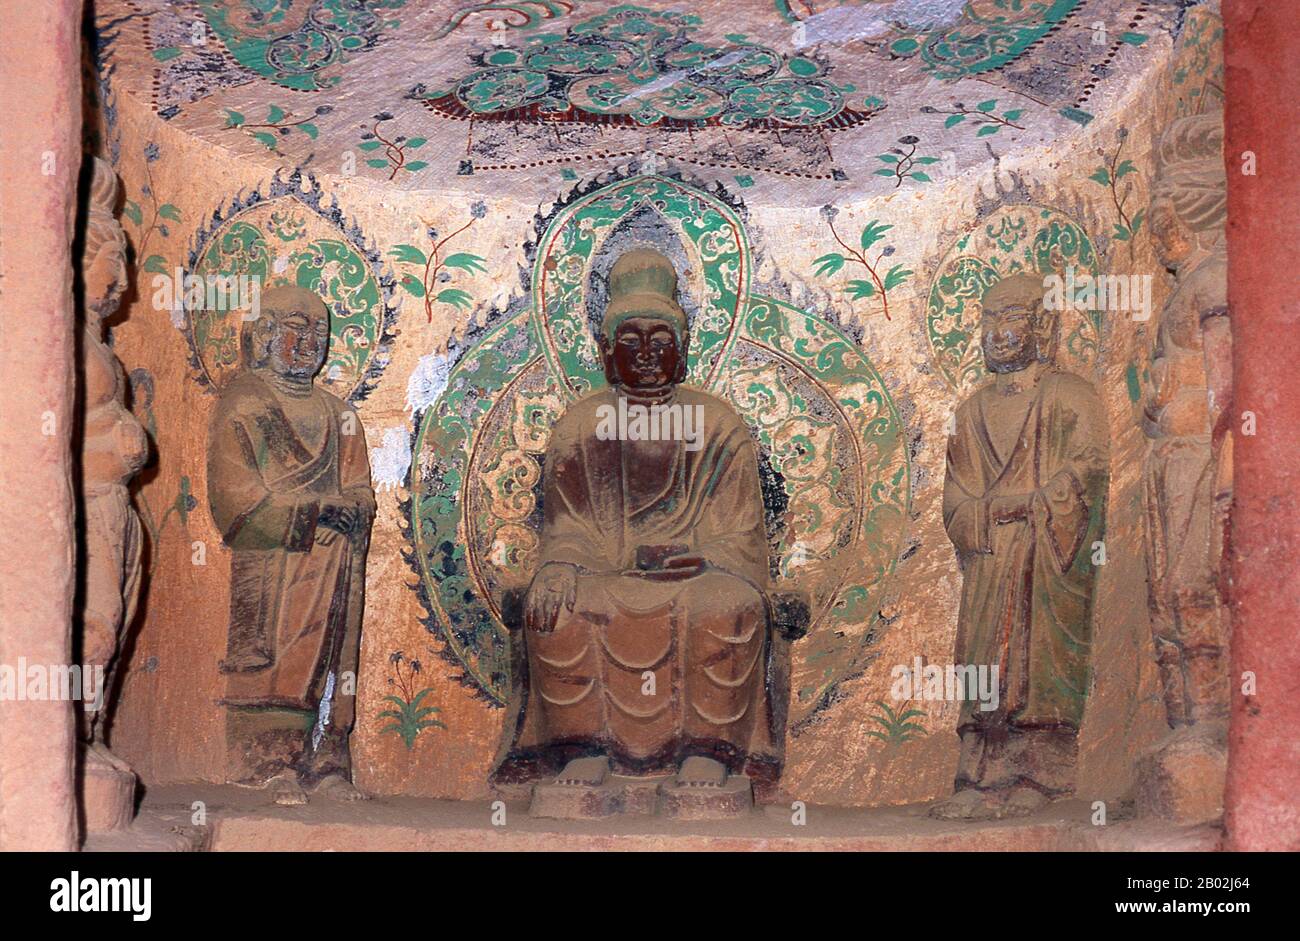 Binglingsi Shiku (Mille grottes de Bouddha) est une collection de grottes et de grottes dans un canyon inaccessible près de la rivière jaune à environ 80 km en amont de Lanzhou. L'isolement même du site a protégé et préservé Binglingsi, notamment de marauder les gardes rouges pendant la Révolution culturelle (1966 - 76). Les premières grottes bouddhistes de Binglingsi datent de la dynastie des Jin de l'est (c. 317 - 420 ce), et la construction a continué pendant bien plus de mille ans tout au long des époques de Tang, Song, Ming et Qing. Les grottes de Bingling ont souvent été parrainées par des patrons riches investissant une partie de leur R de soie Banque D'Images